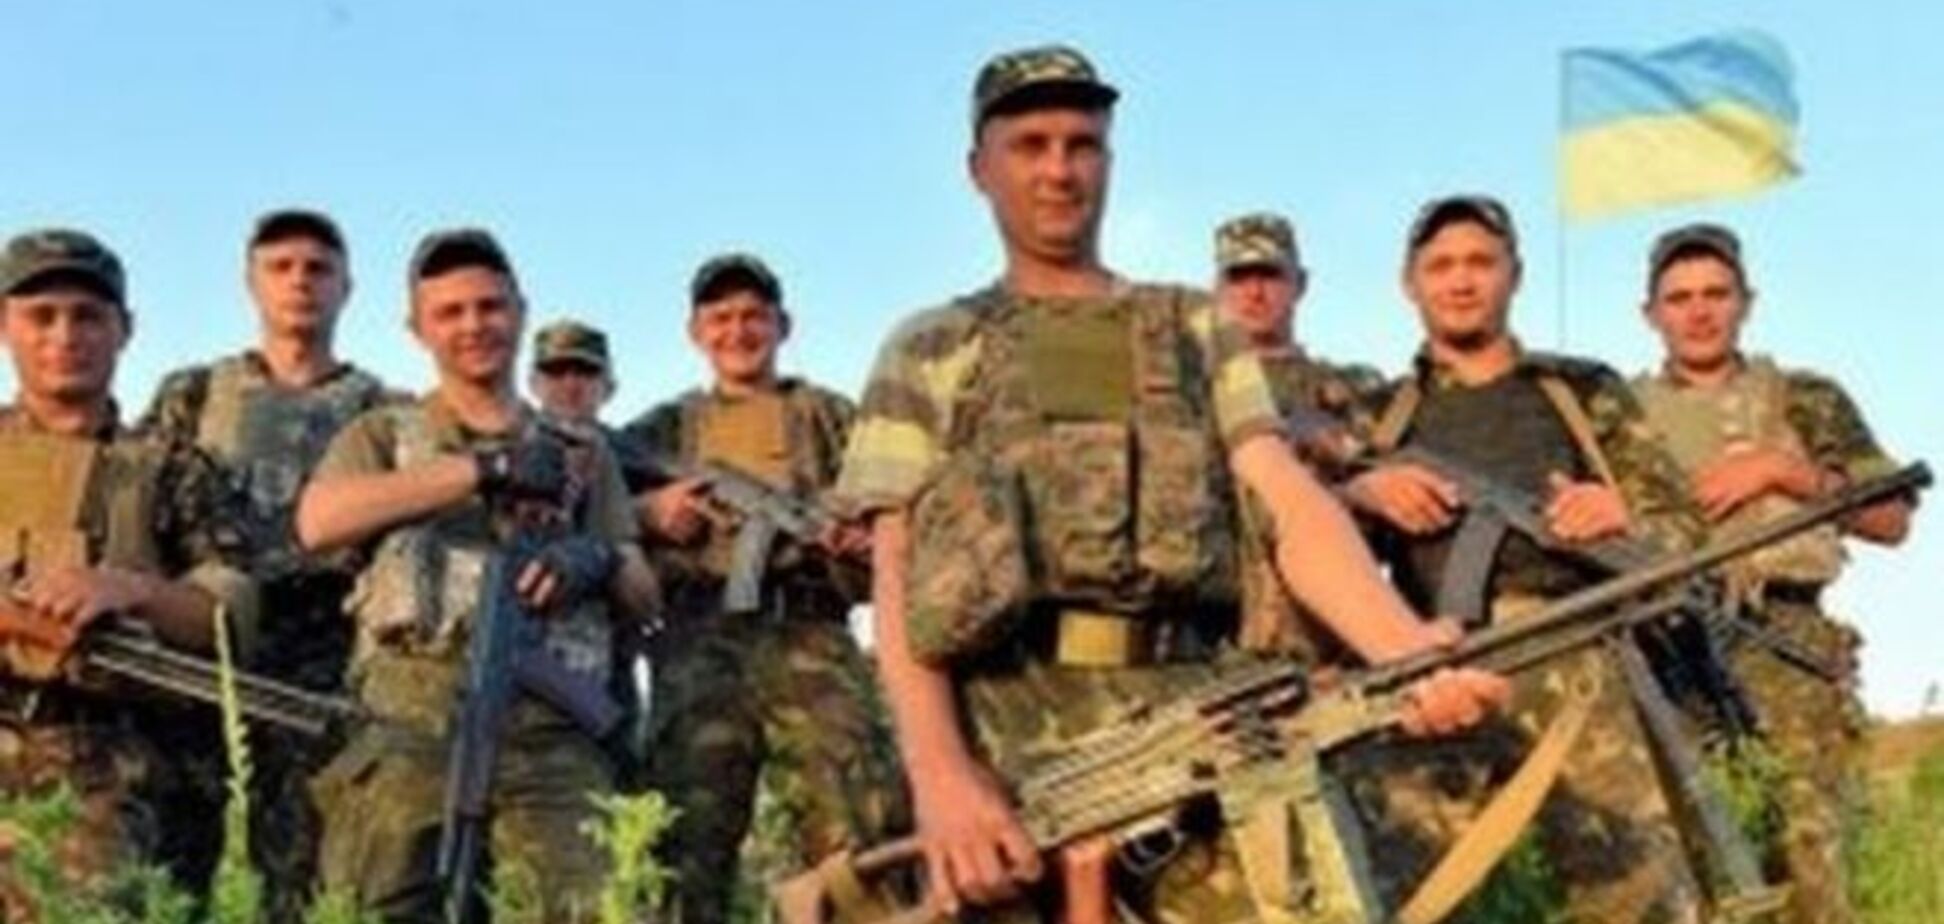 Ни минуты покоя: опубликовано видео тренировок украинских бойцов на передовой